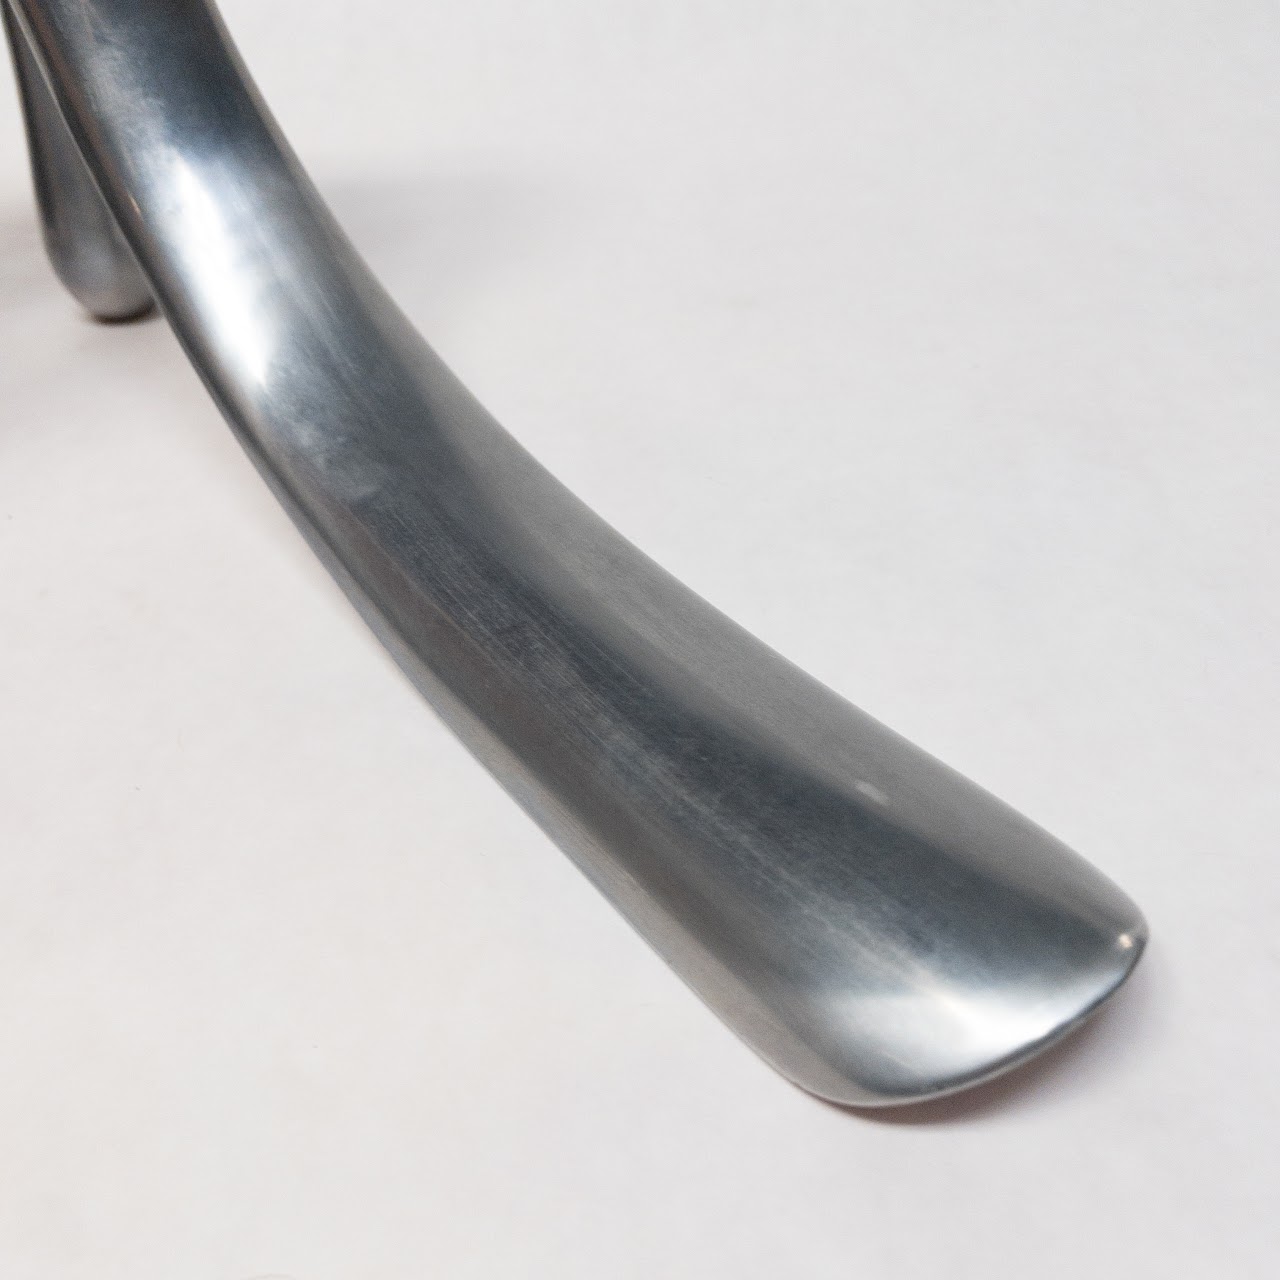 Manolo Blahnik Cast Aluminum Shoe Horn